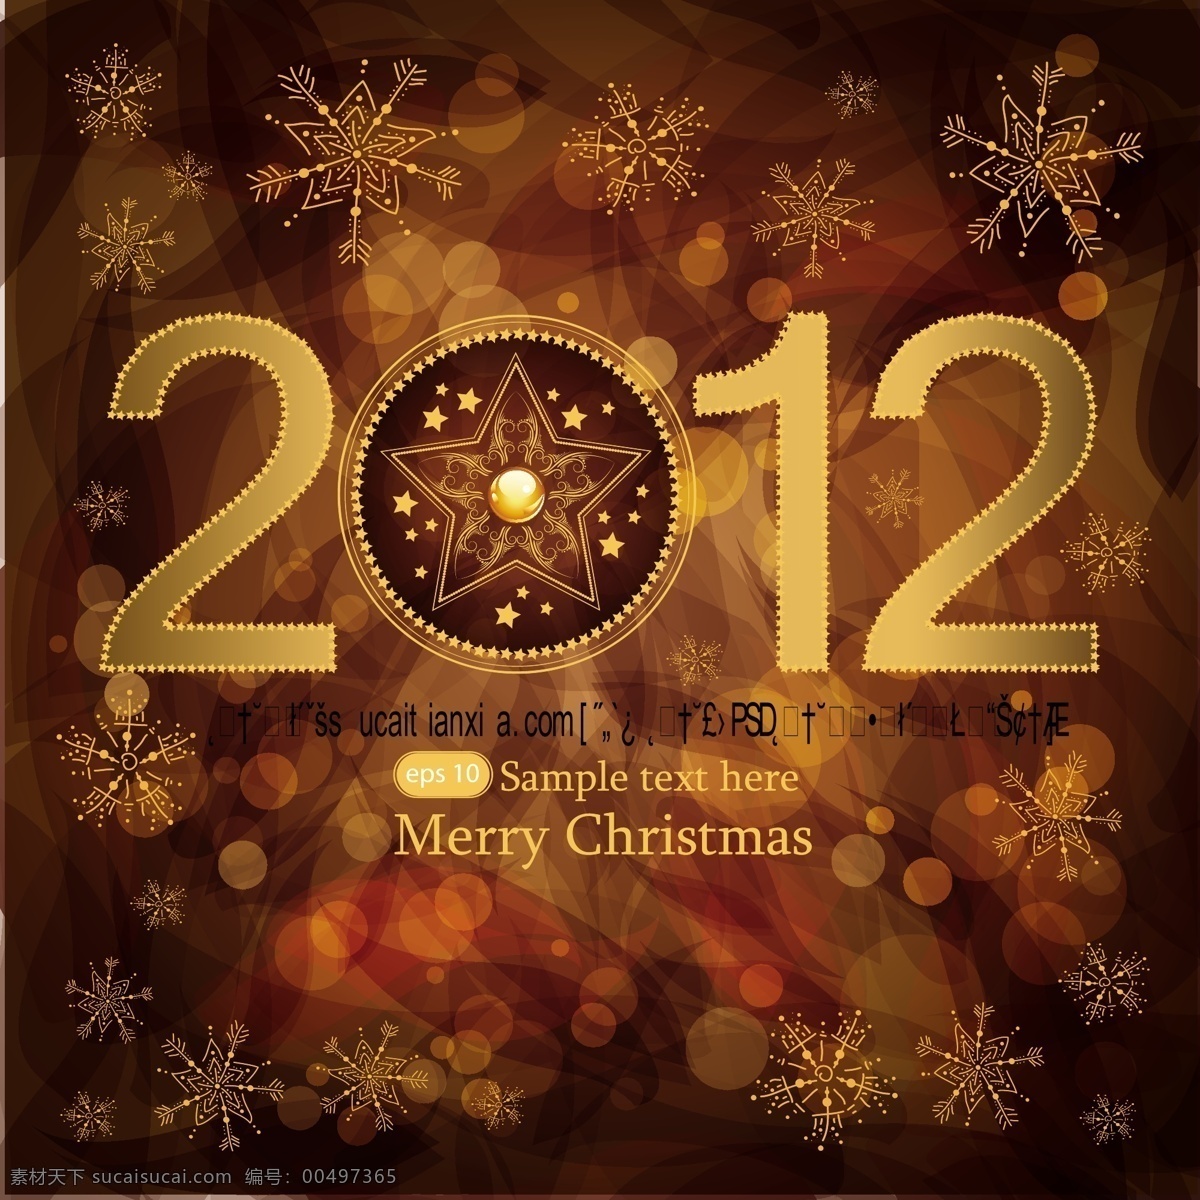 矢量 2012 年 圣诞节 祝福 卡片 2012年 光斑 线条 雪花 祝福卡片 吊球 节日素材